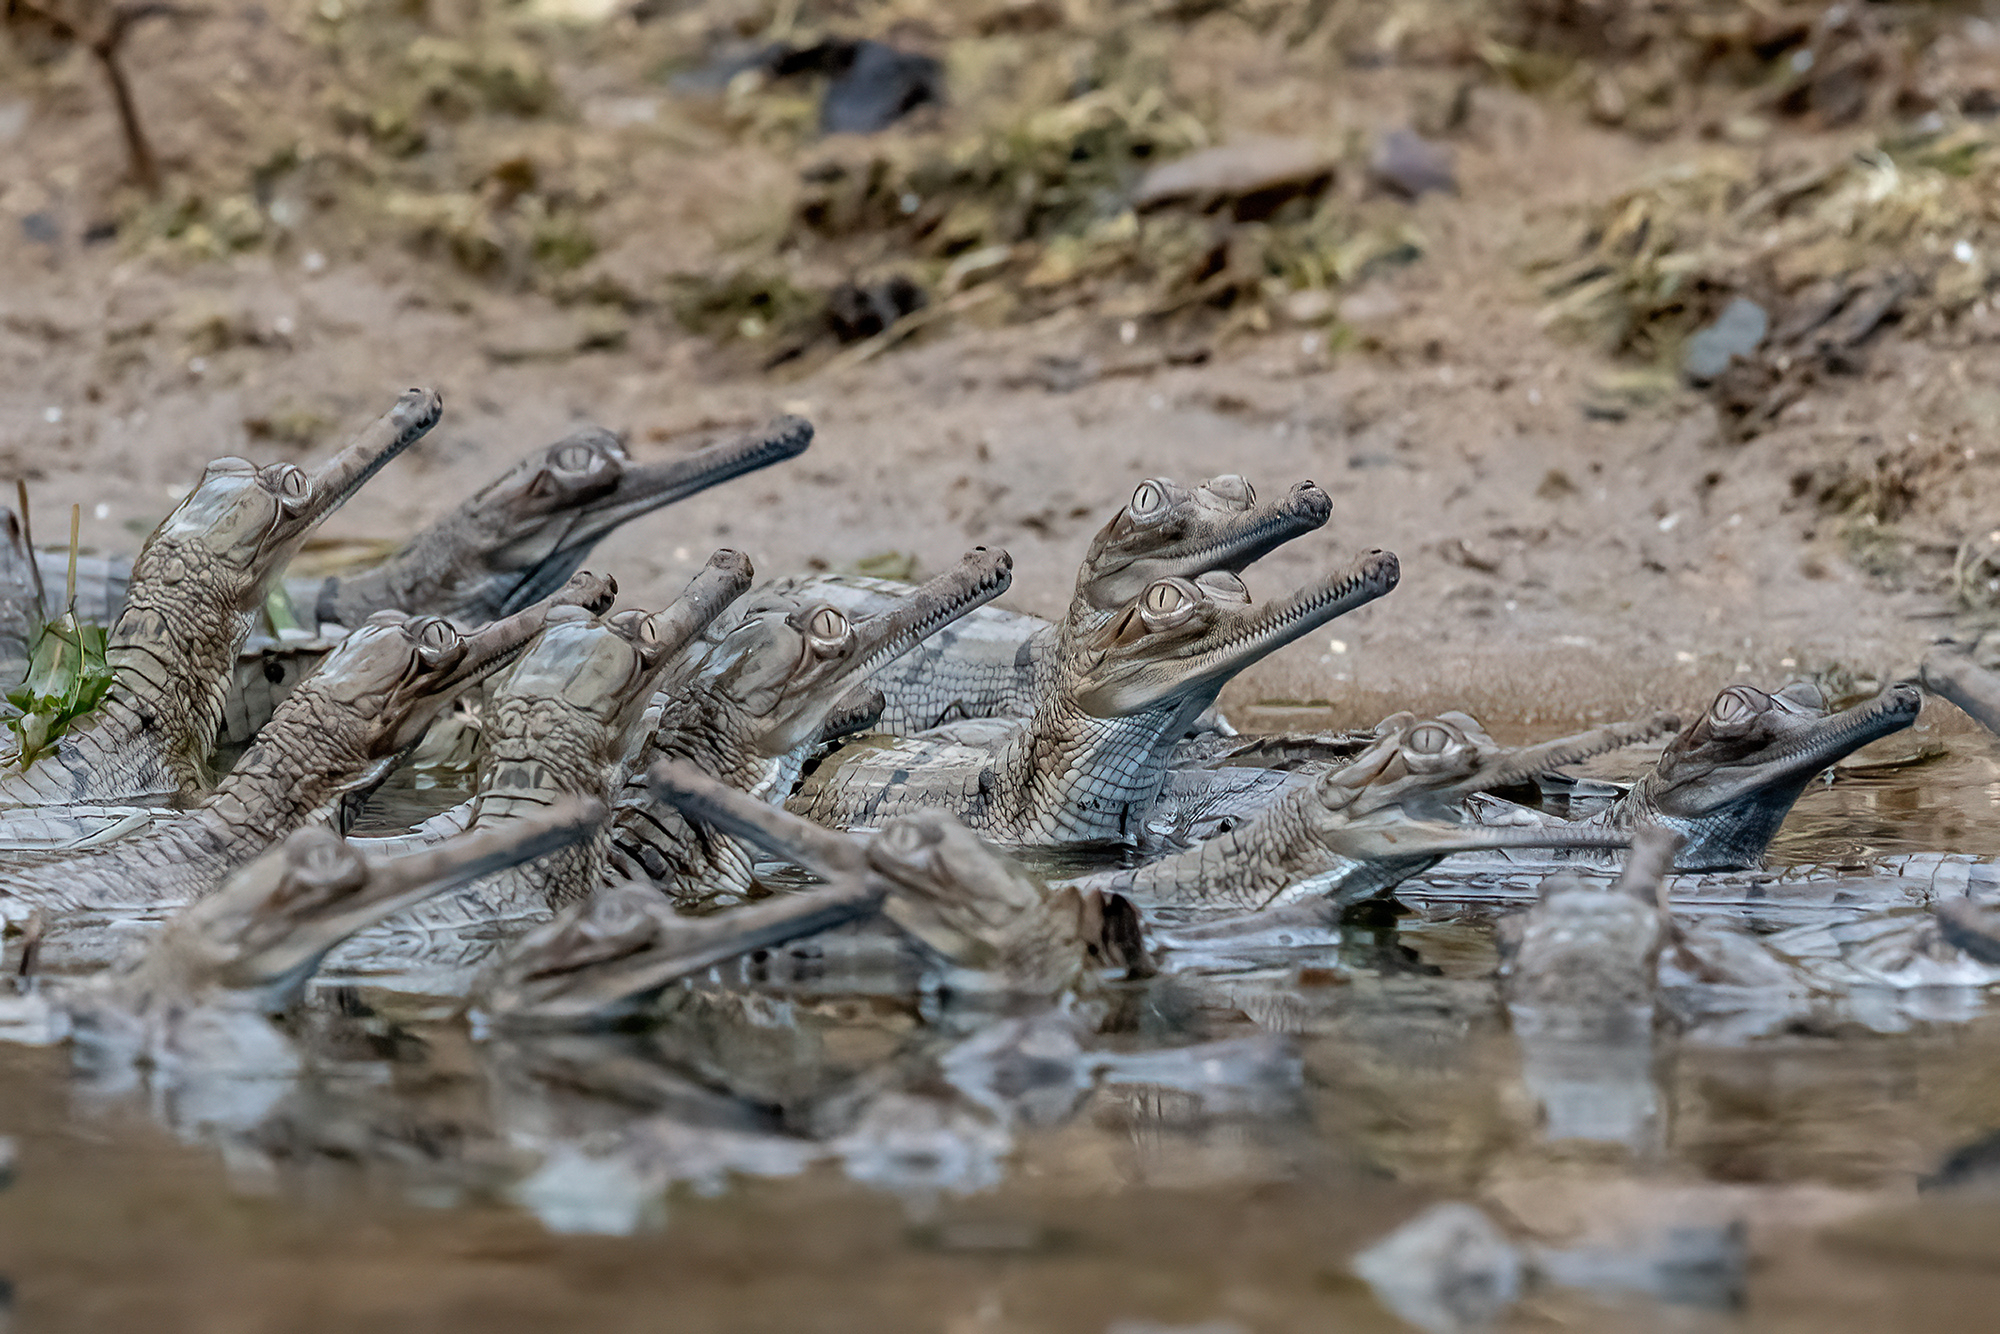 28 may 23 palighat gharial babies 4s.jpg